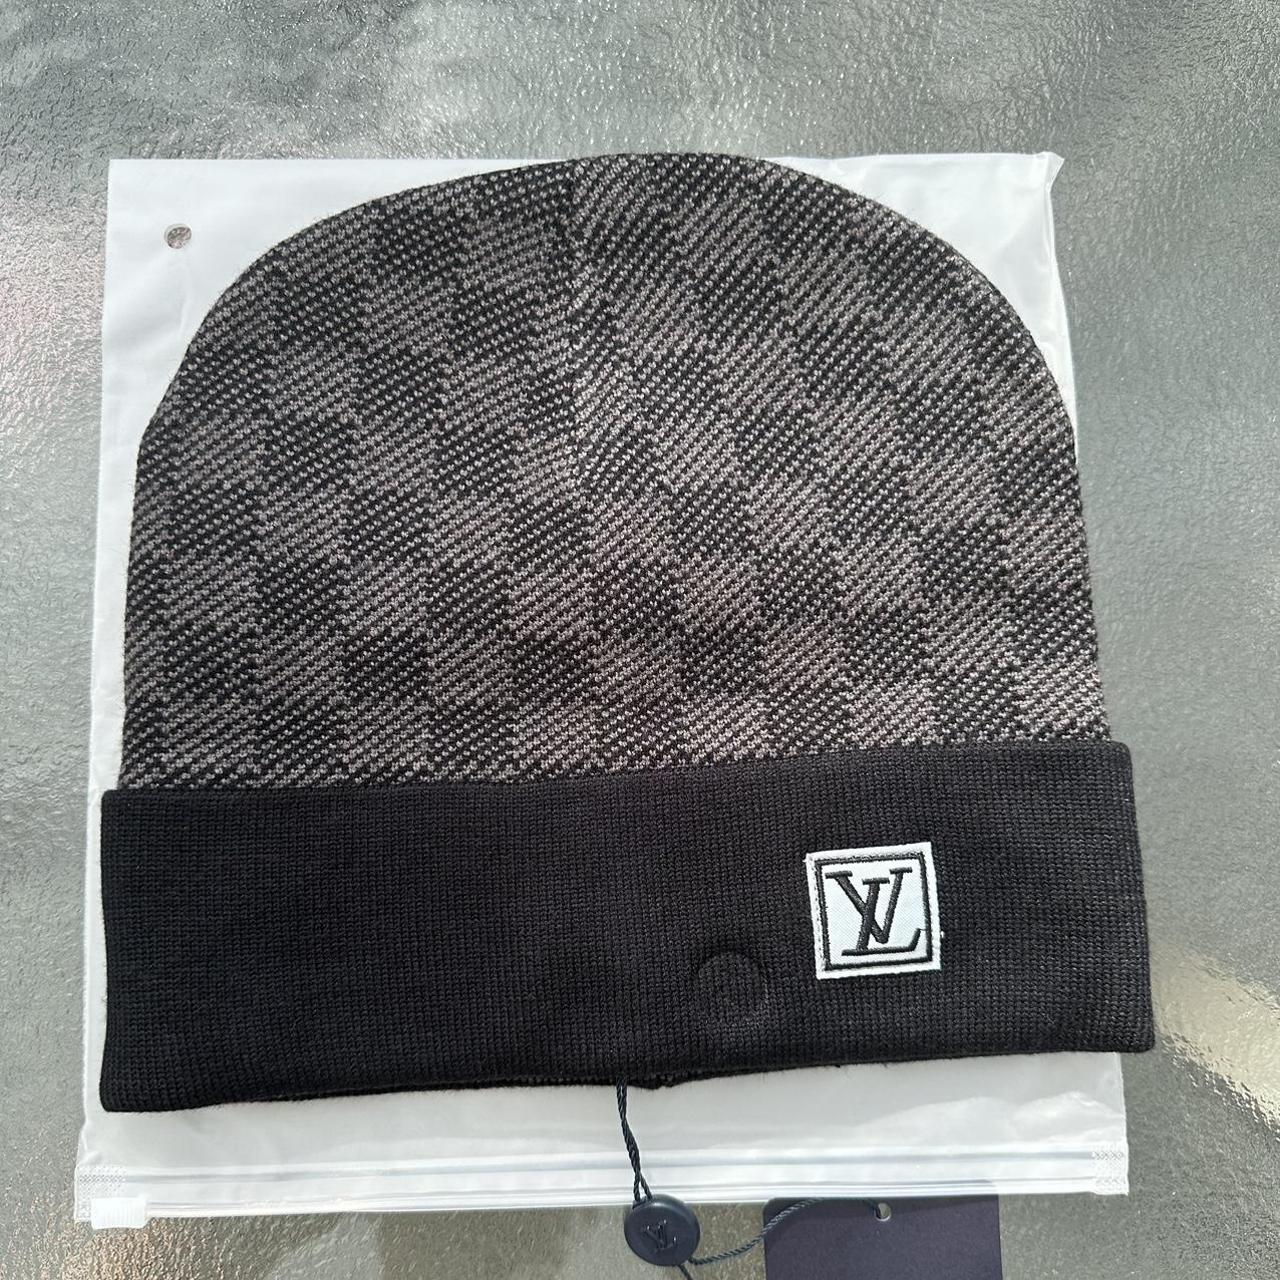 LV hat / scarf set - Depop